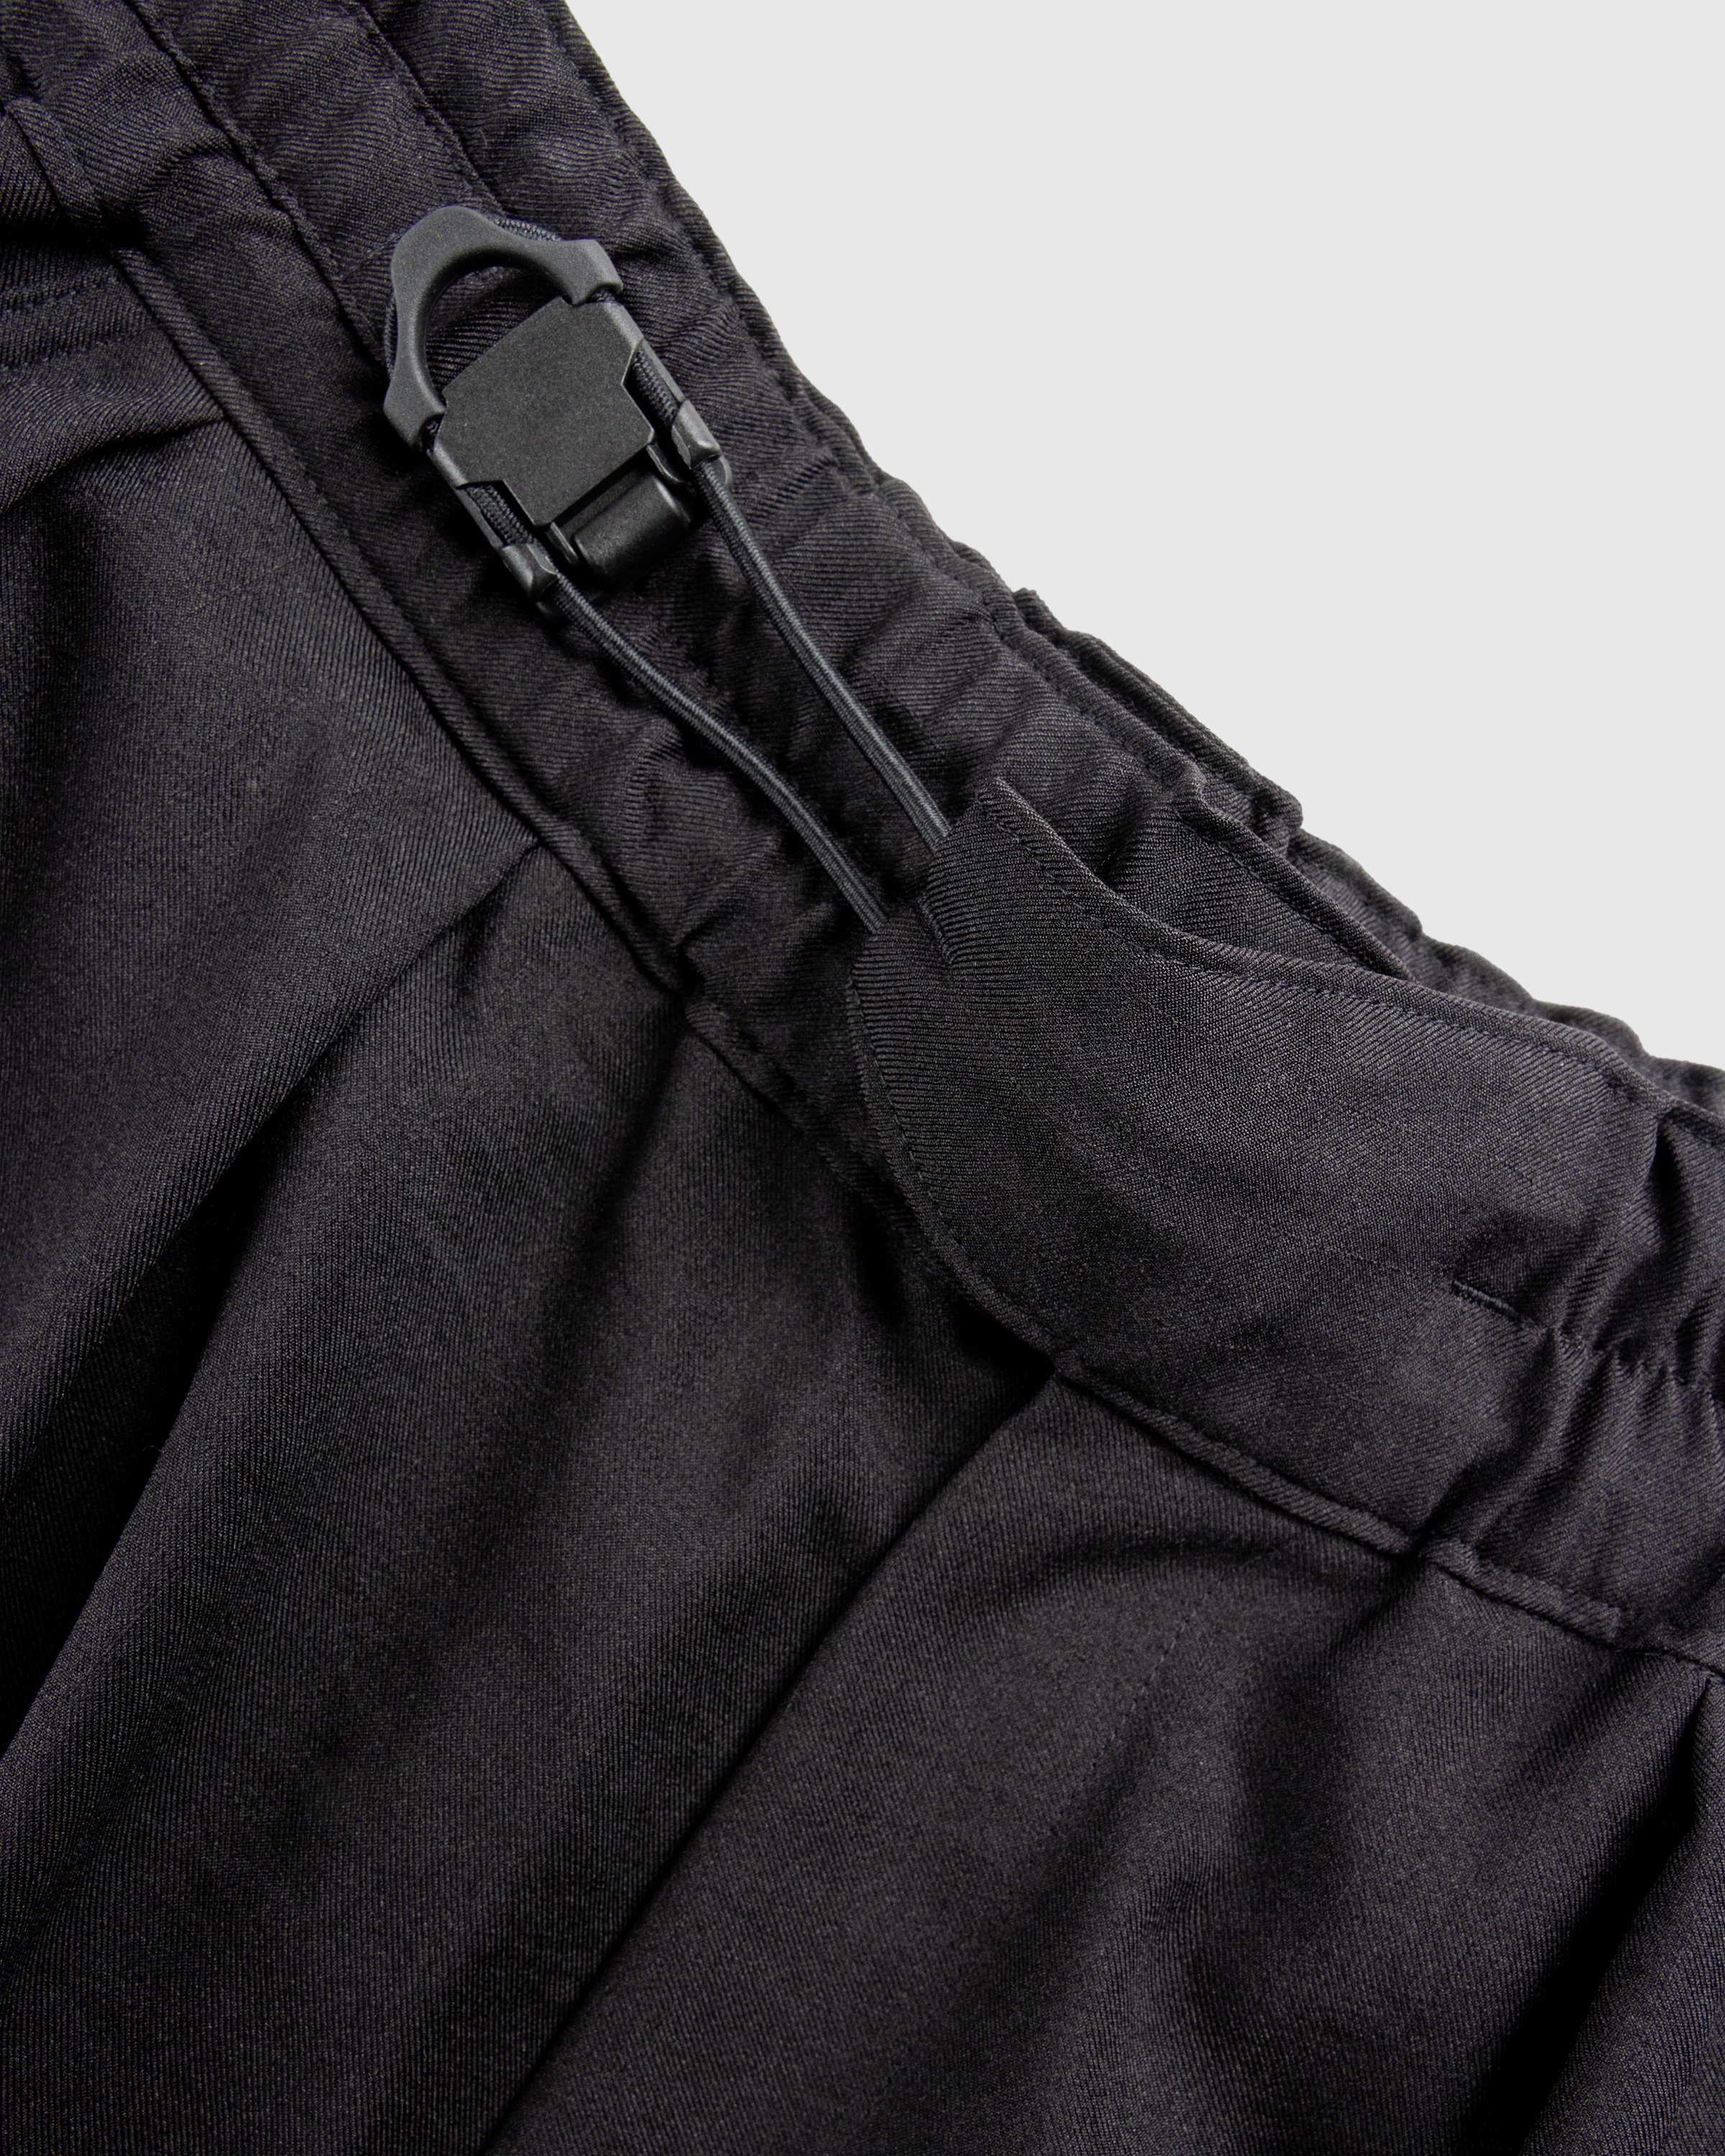 Y-3 - Sp Uni Shorts Black - Clothing - Black - Image 6